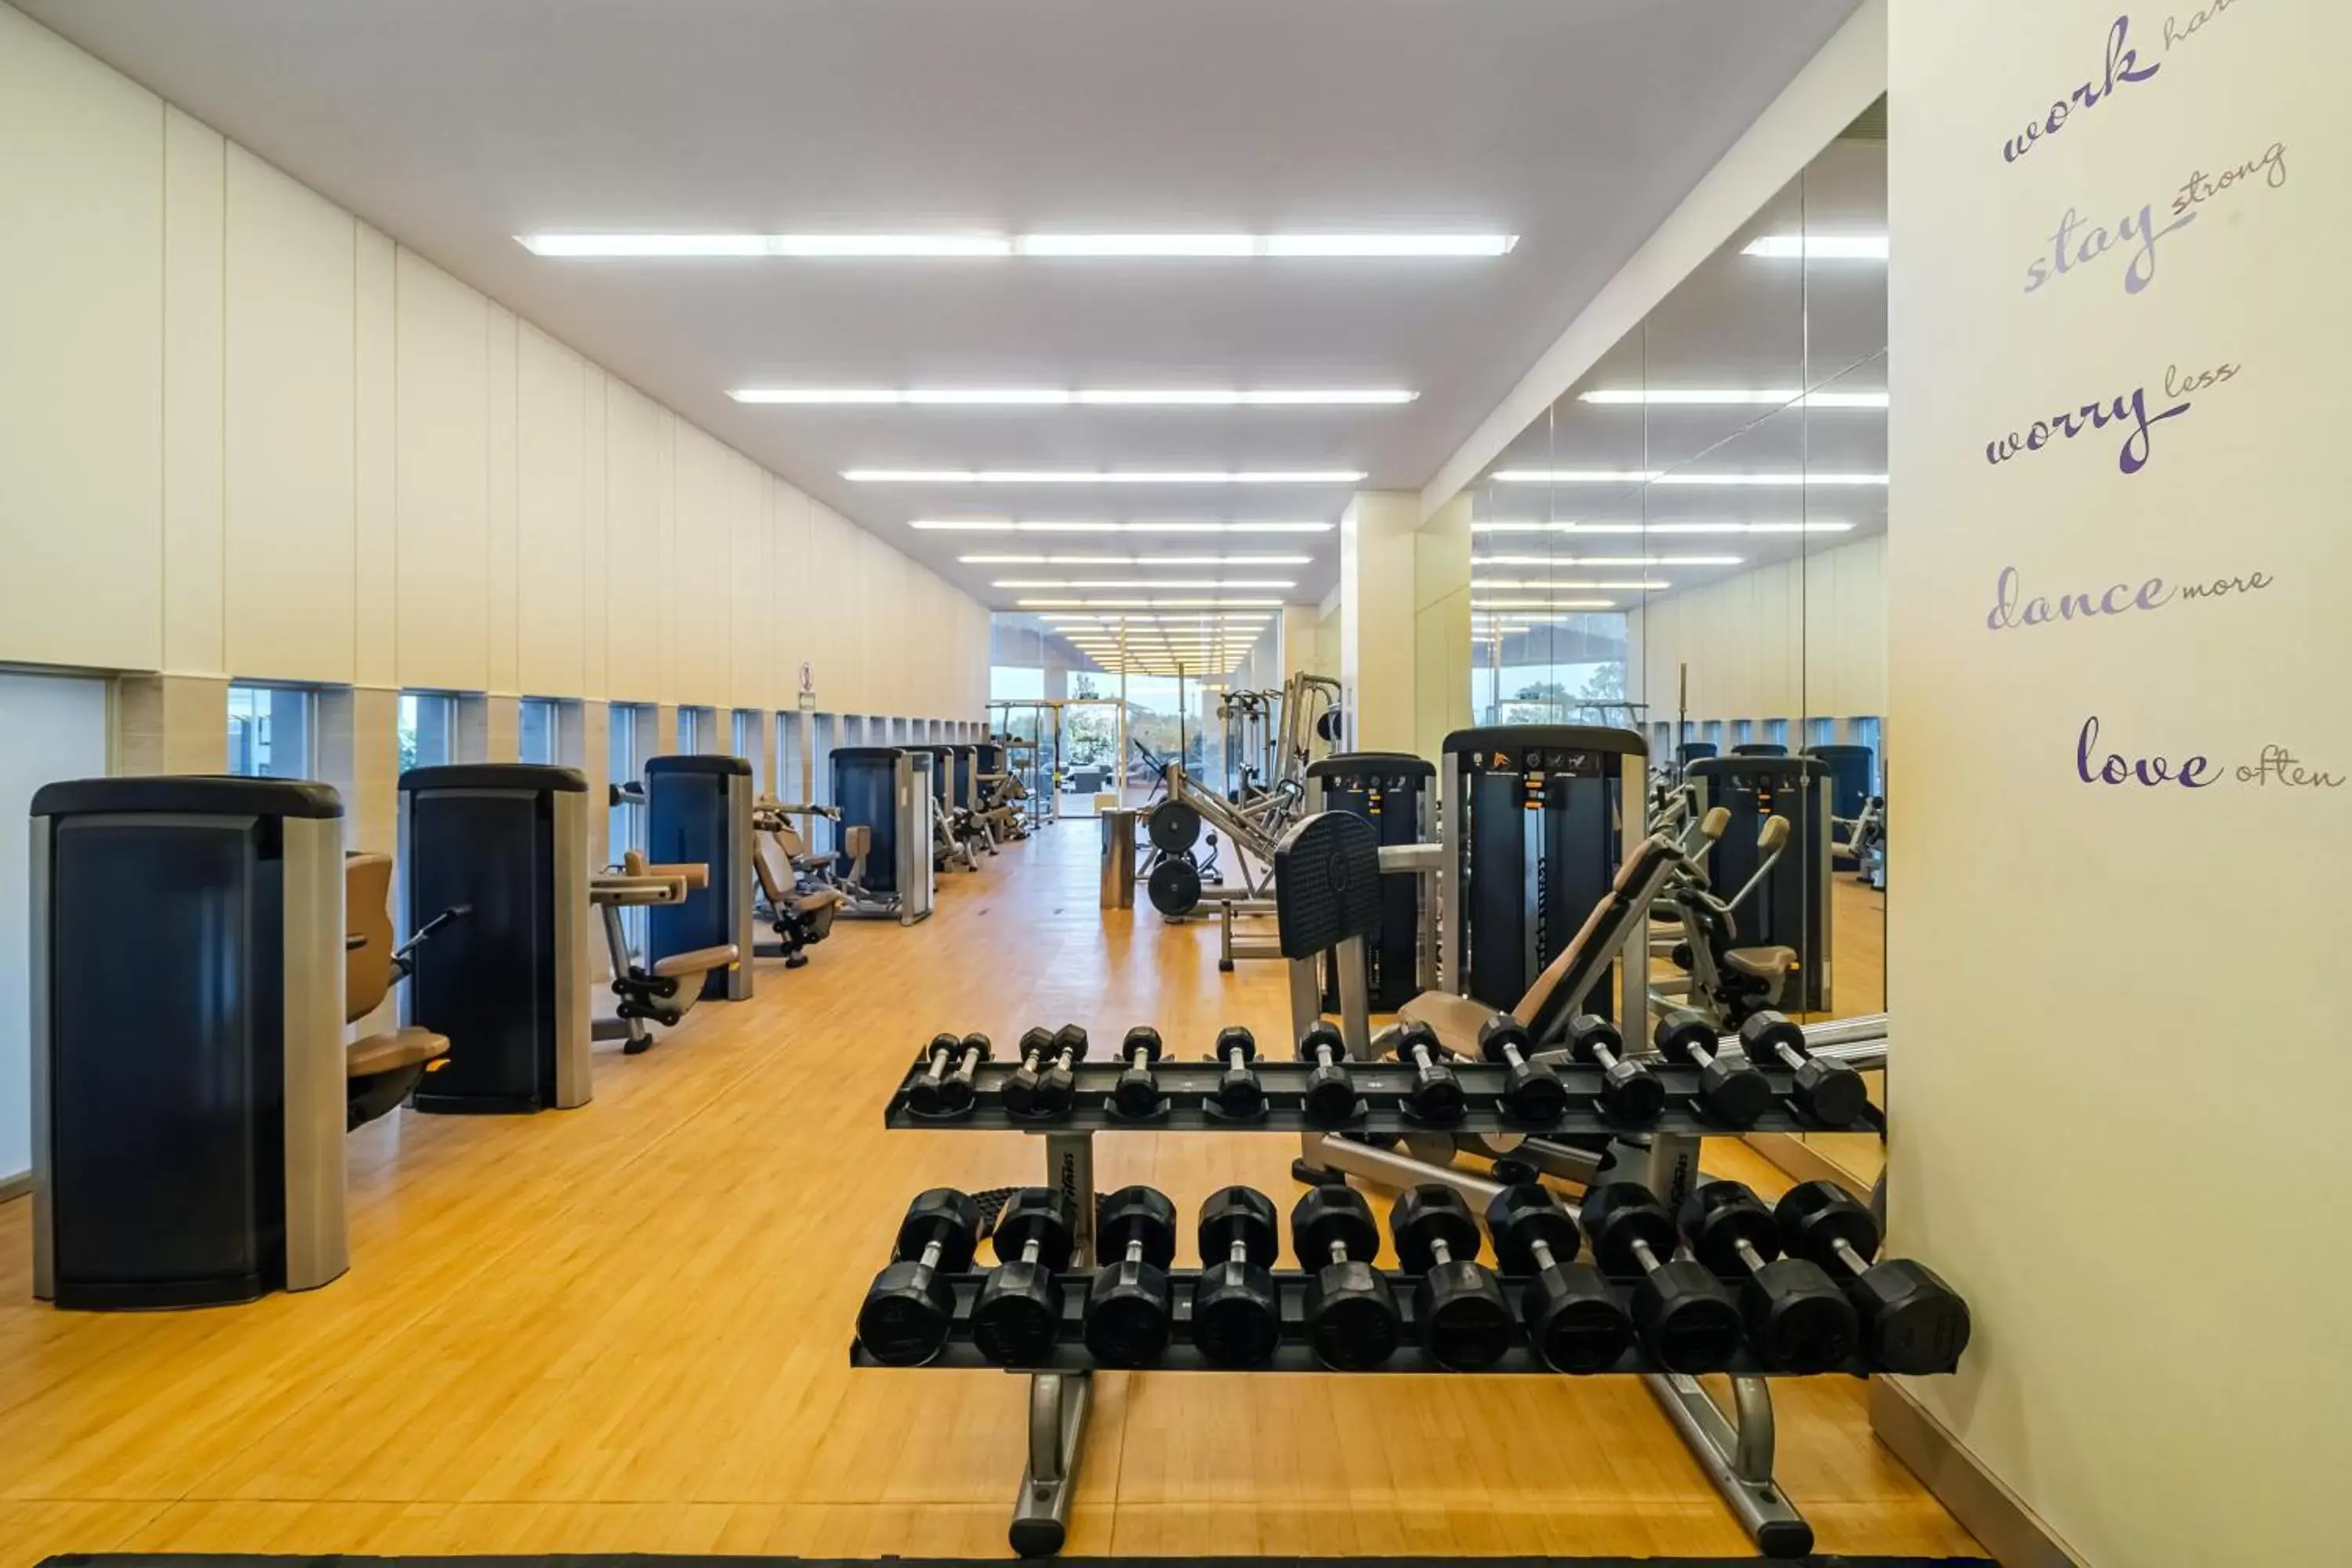 Fitness centre/facilities, Fitness Center/Facilities in Hyatt Regency Mexico City